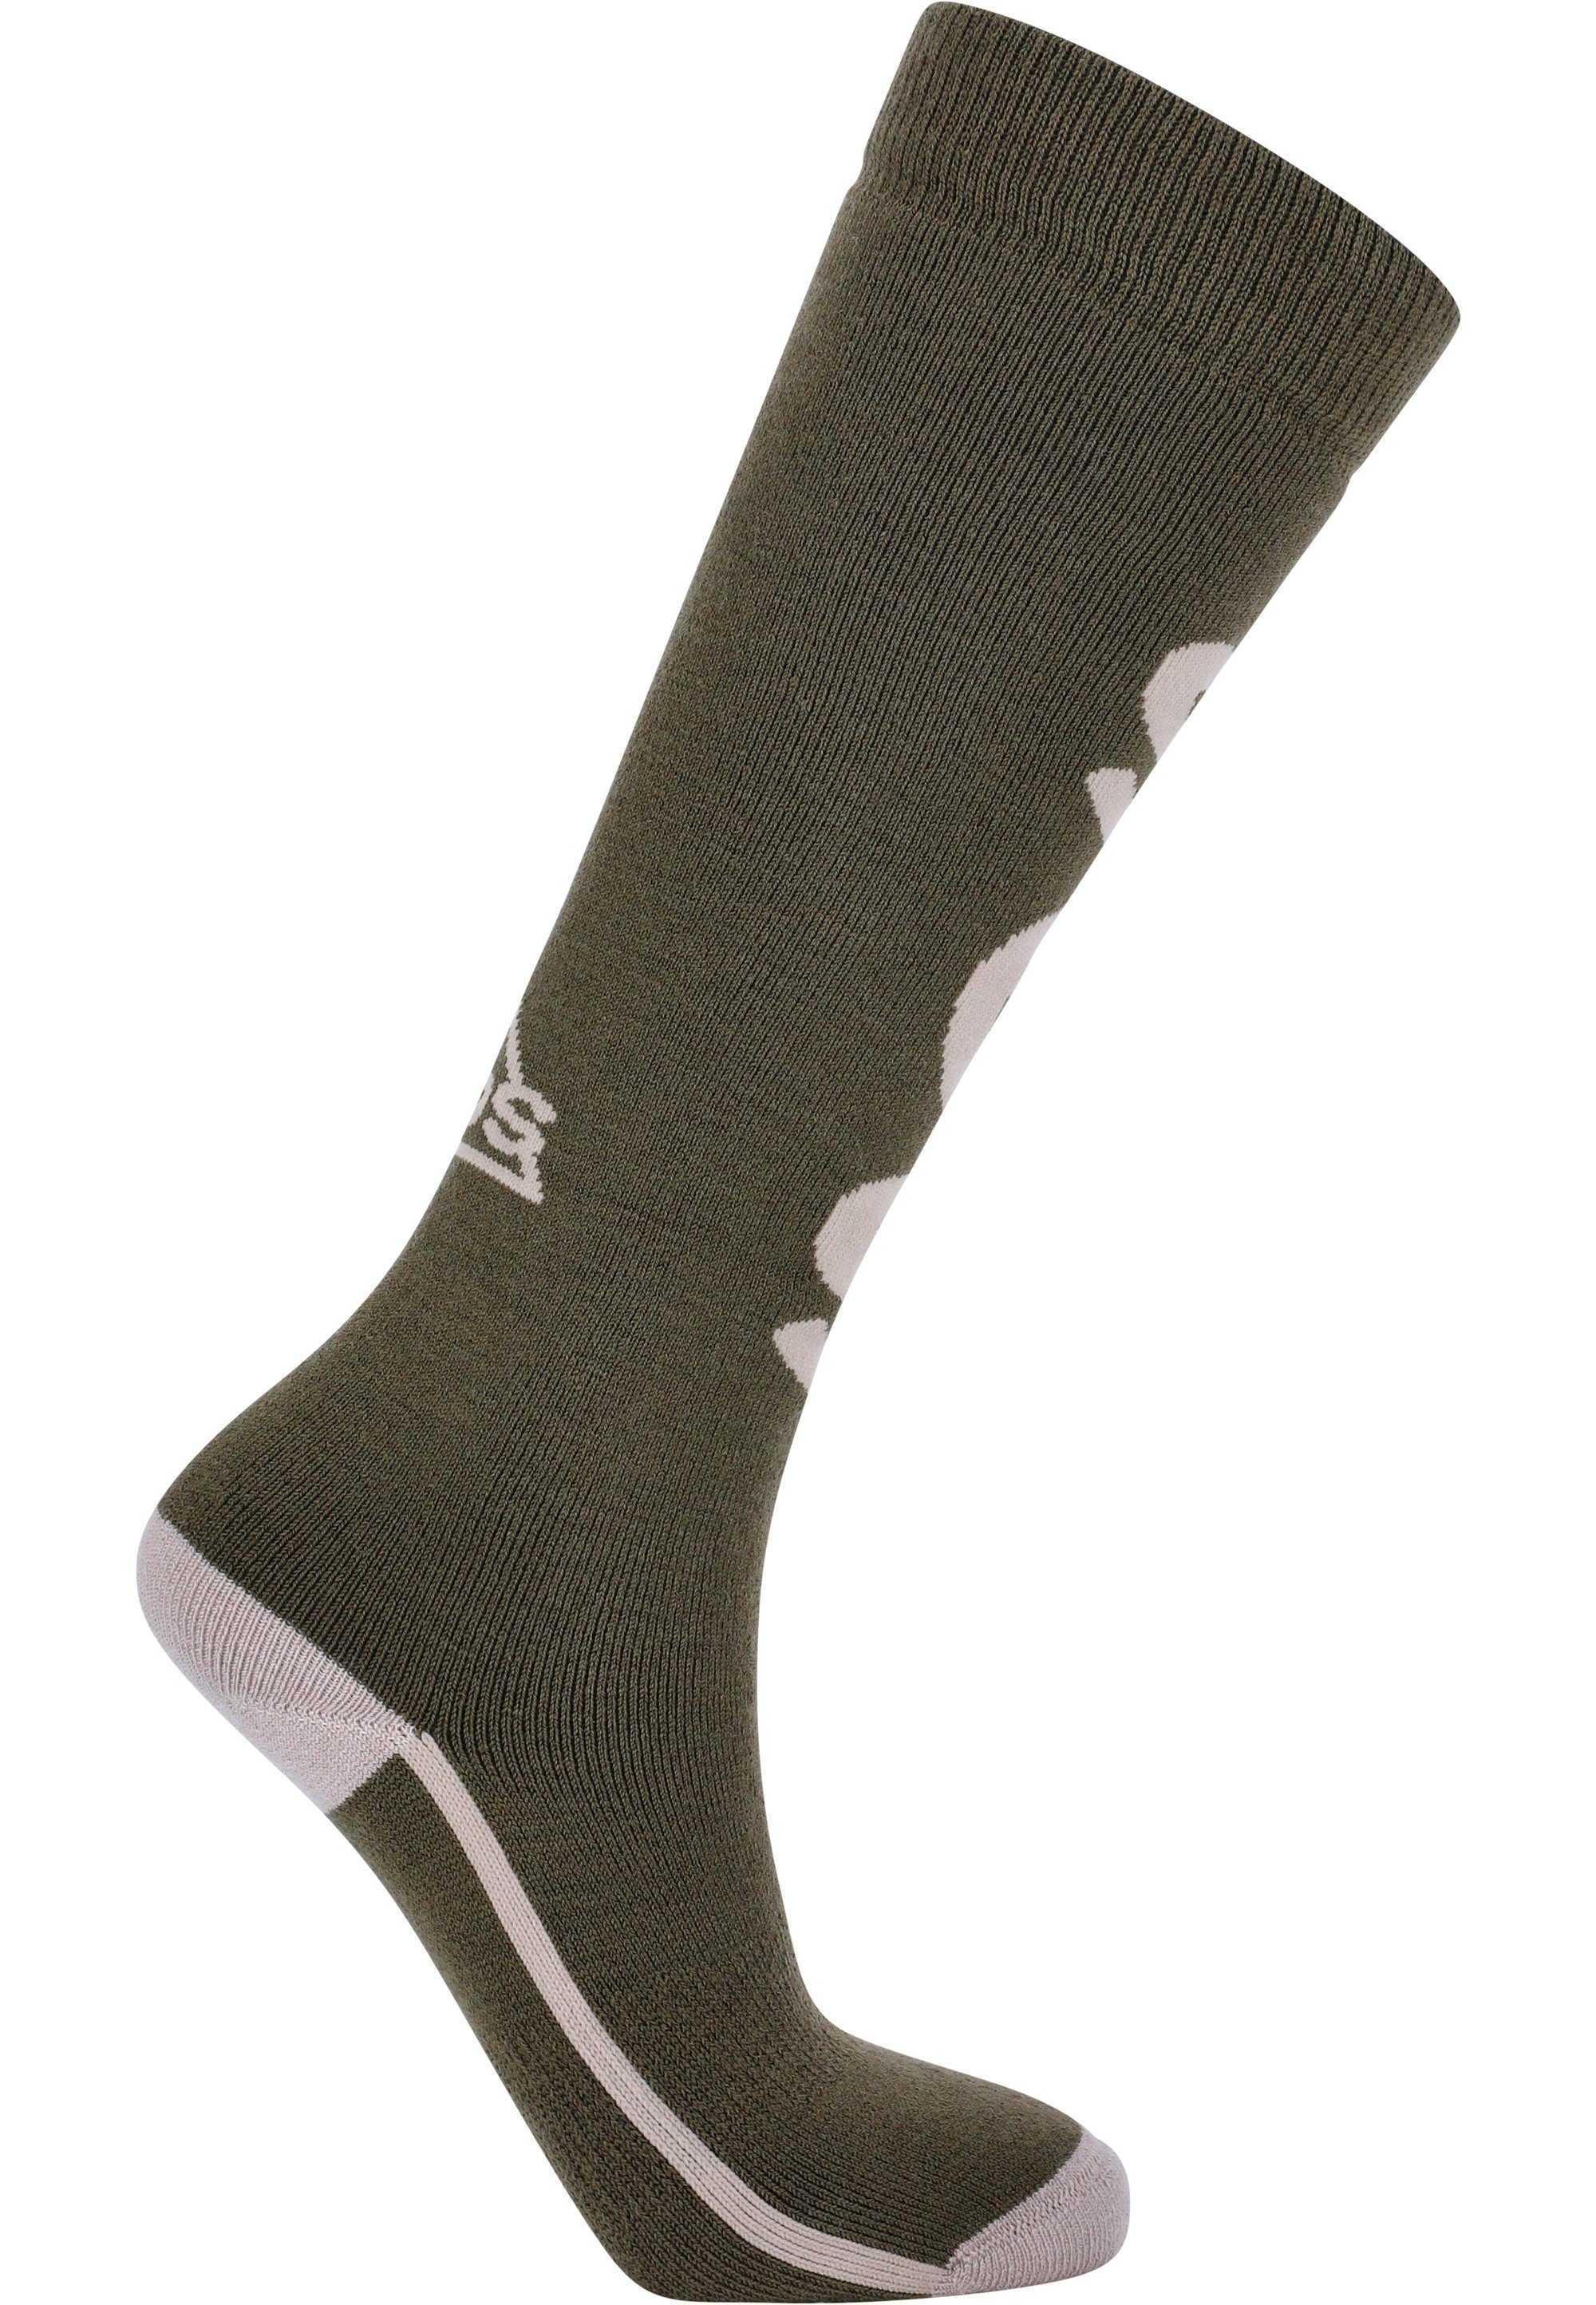 Portillio grün weicher Merinowolle SOS mit Socken besonders